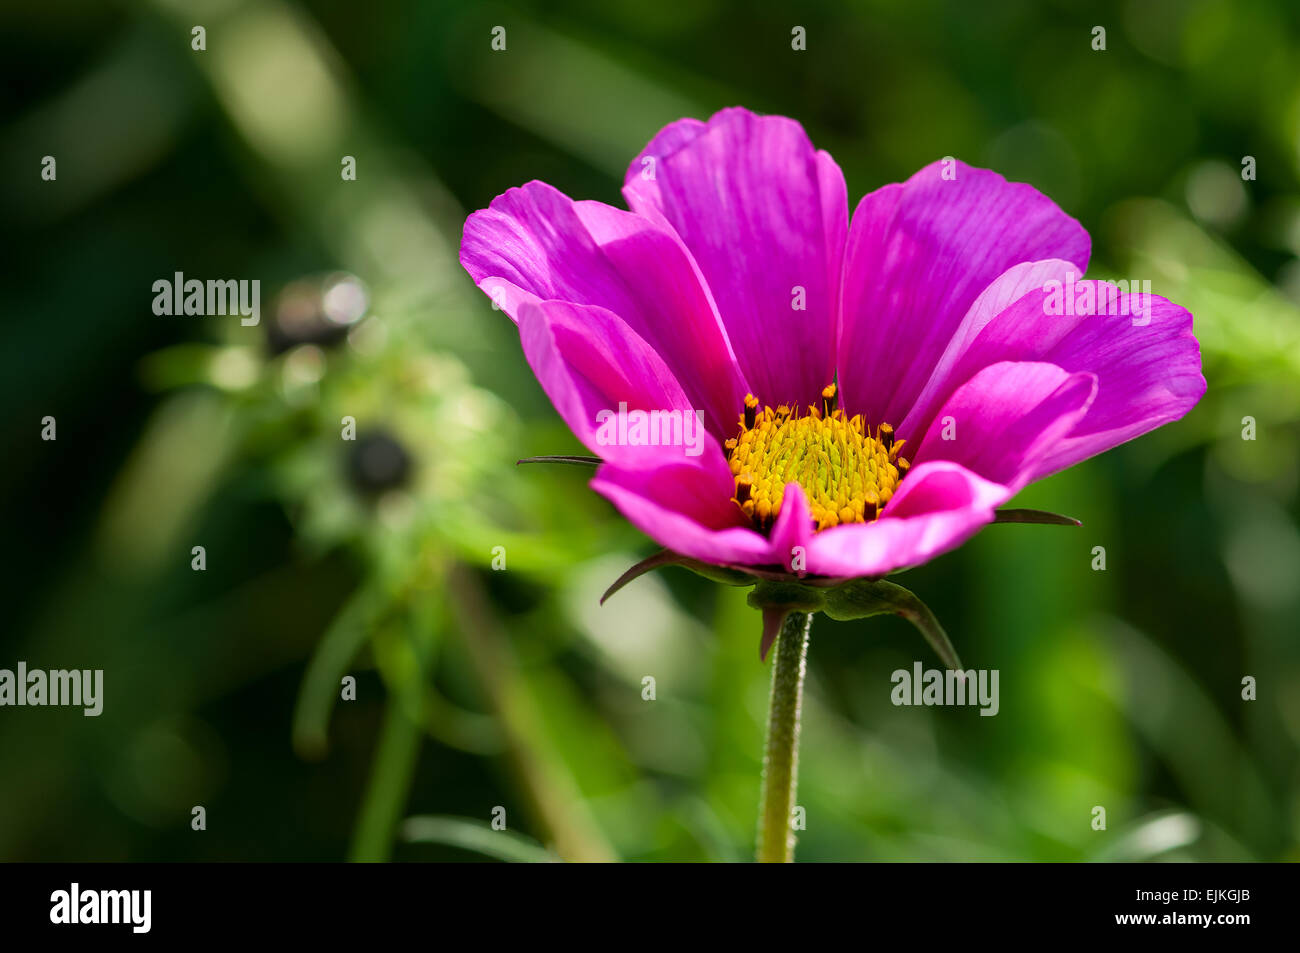 Impianto, Asteraceae, cosmos bipinnatus, fiore rosa, close up Foto Stock